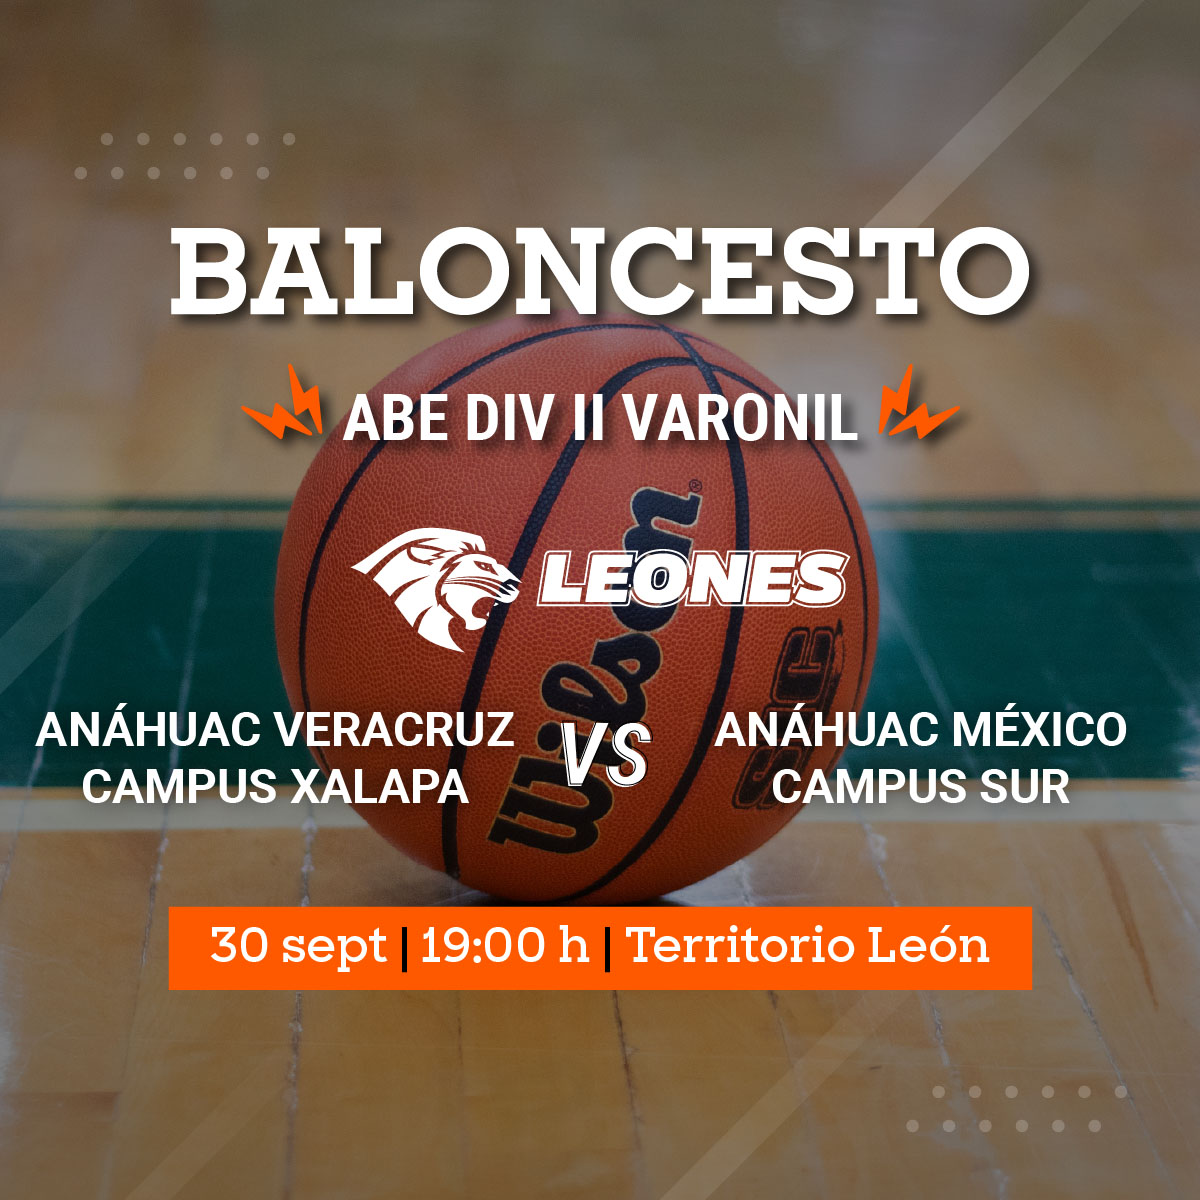 Baloncesto Varonil ABE: Leones vs Anáhuac México campus Sur